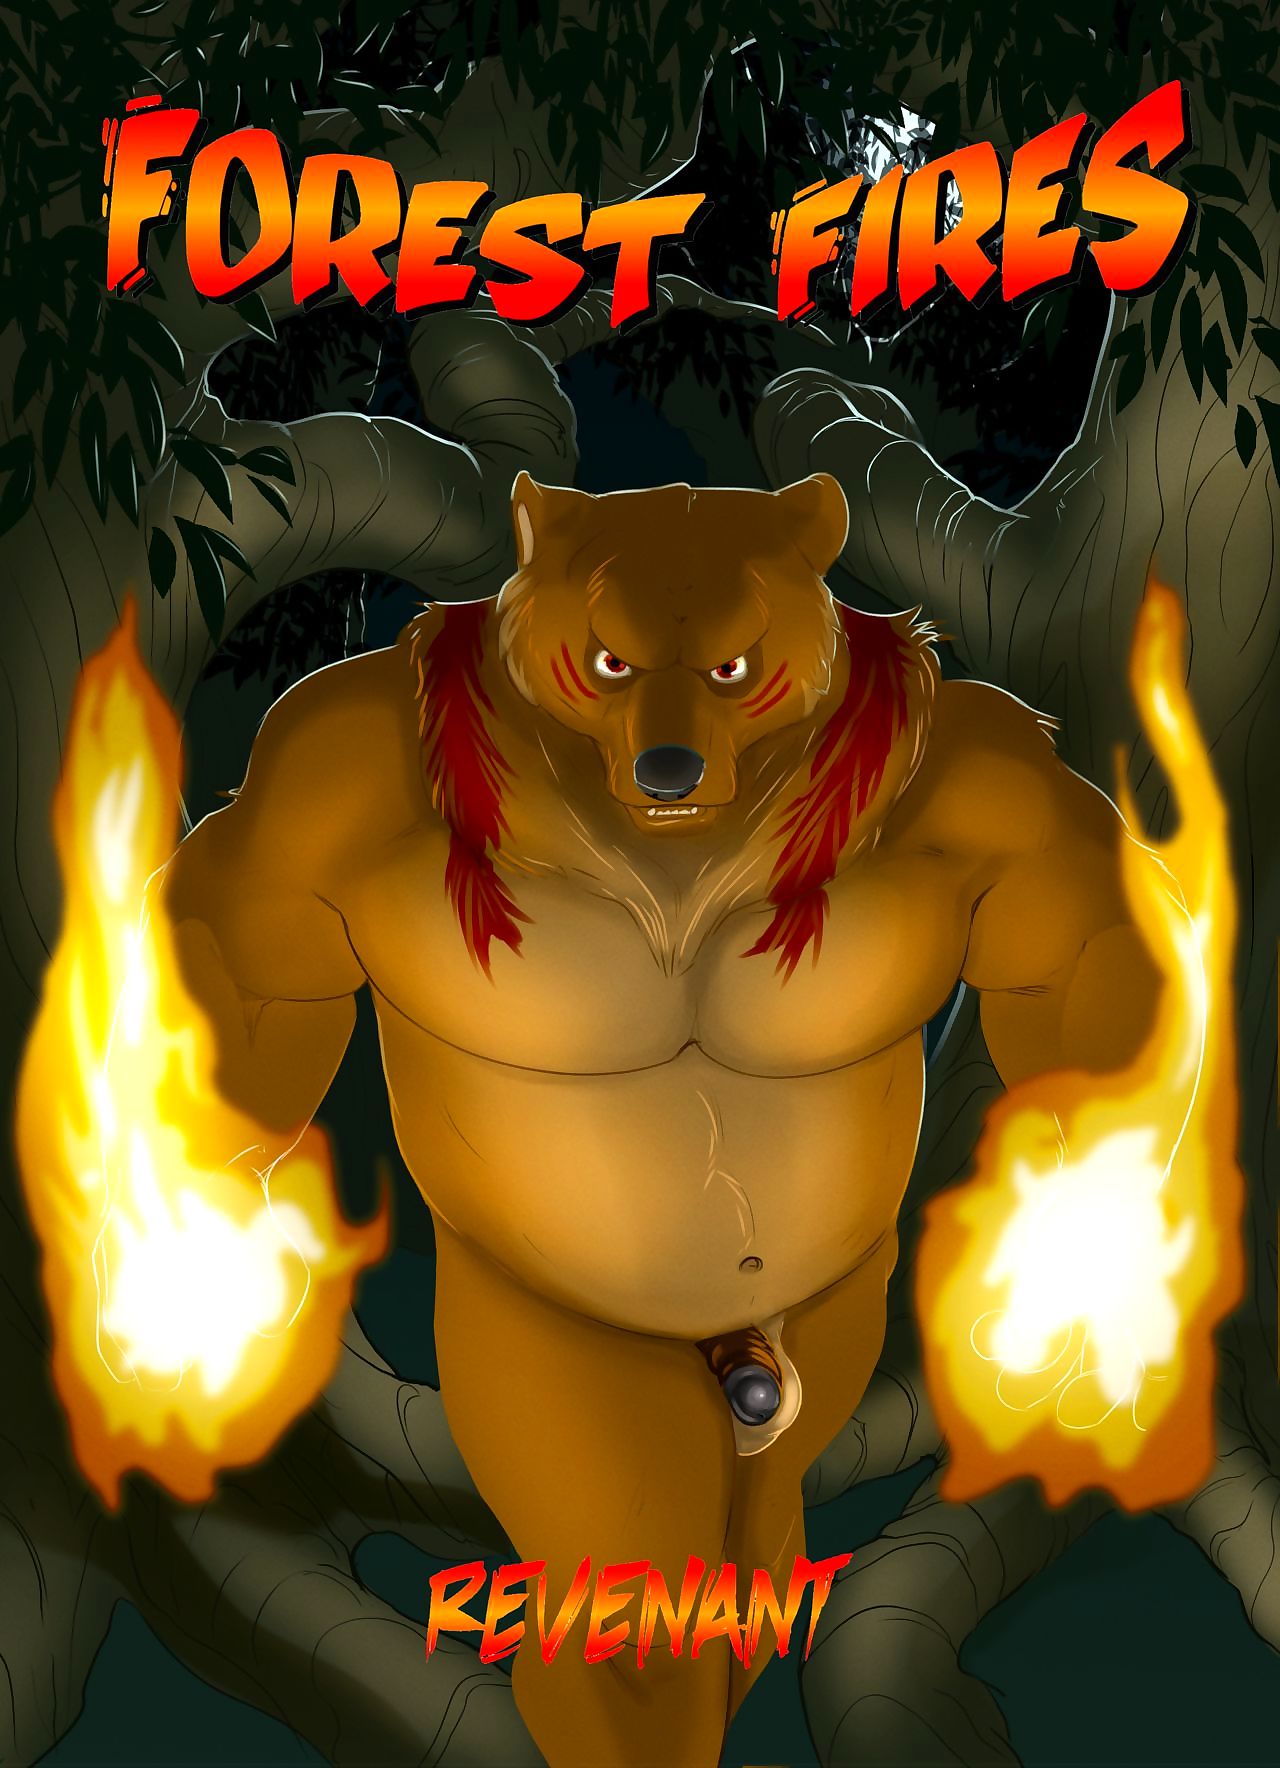 floresta incêndios 2 revenant